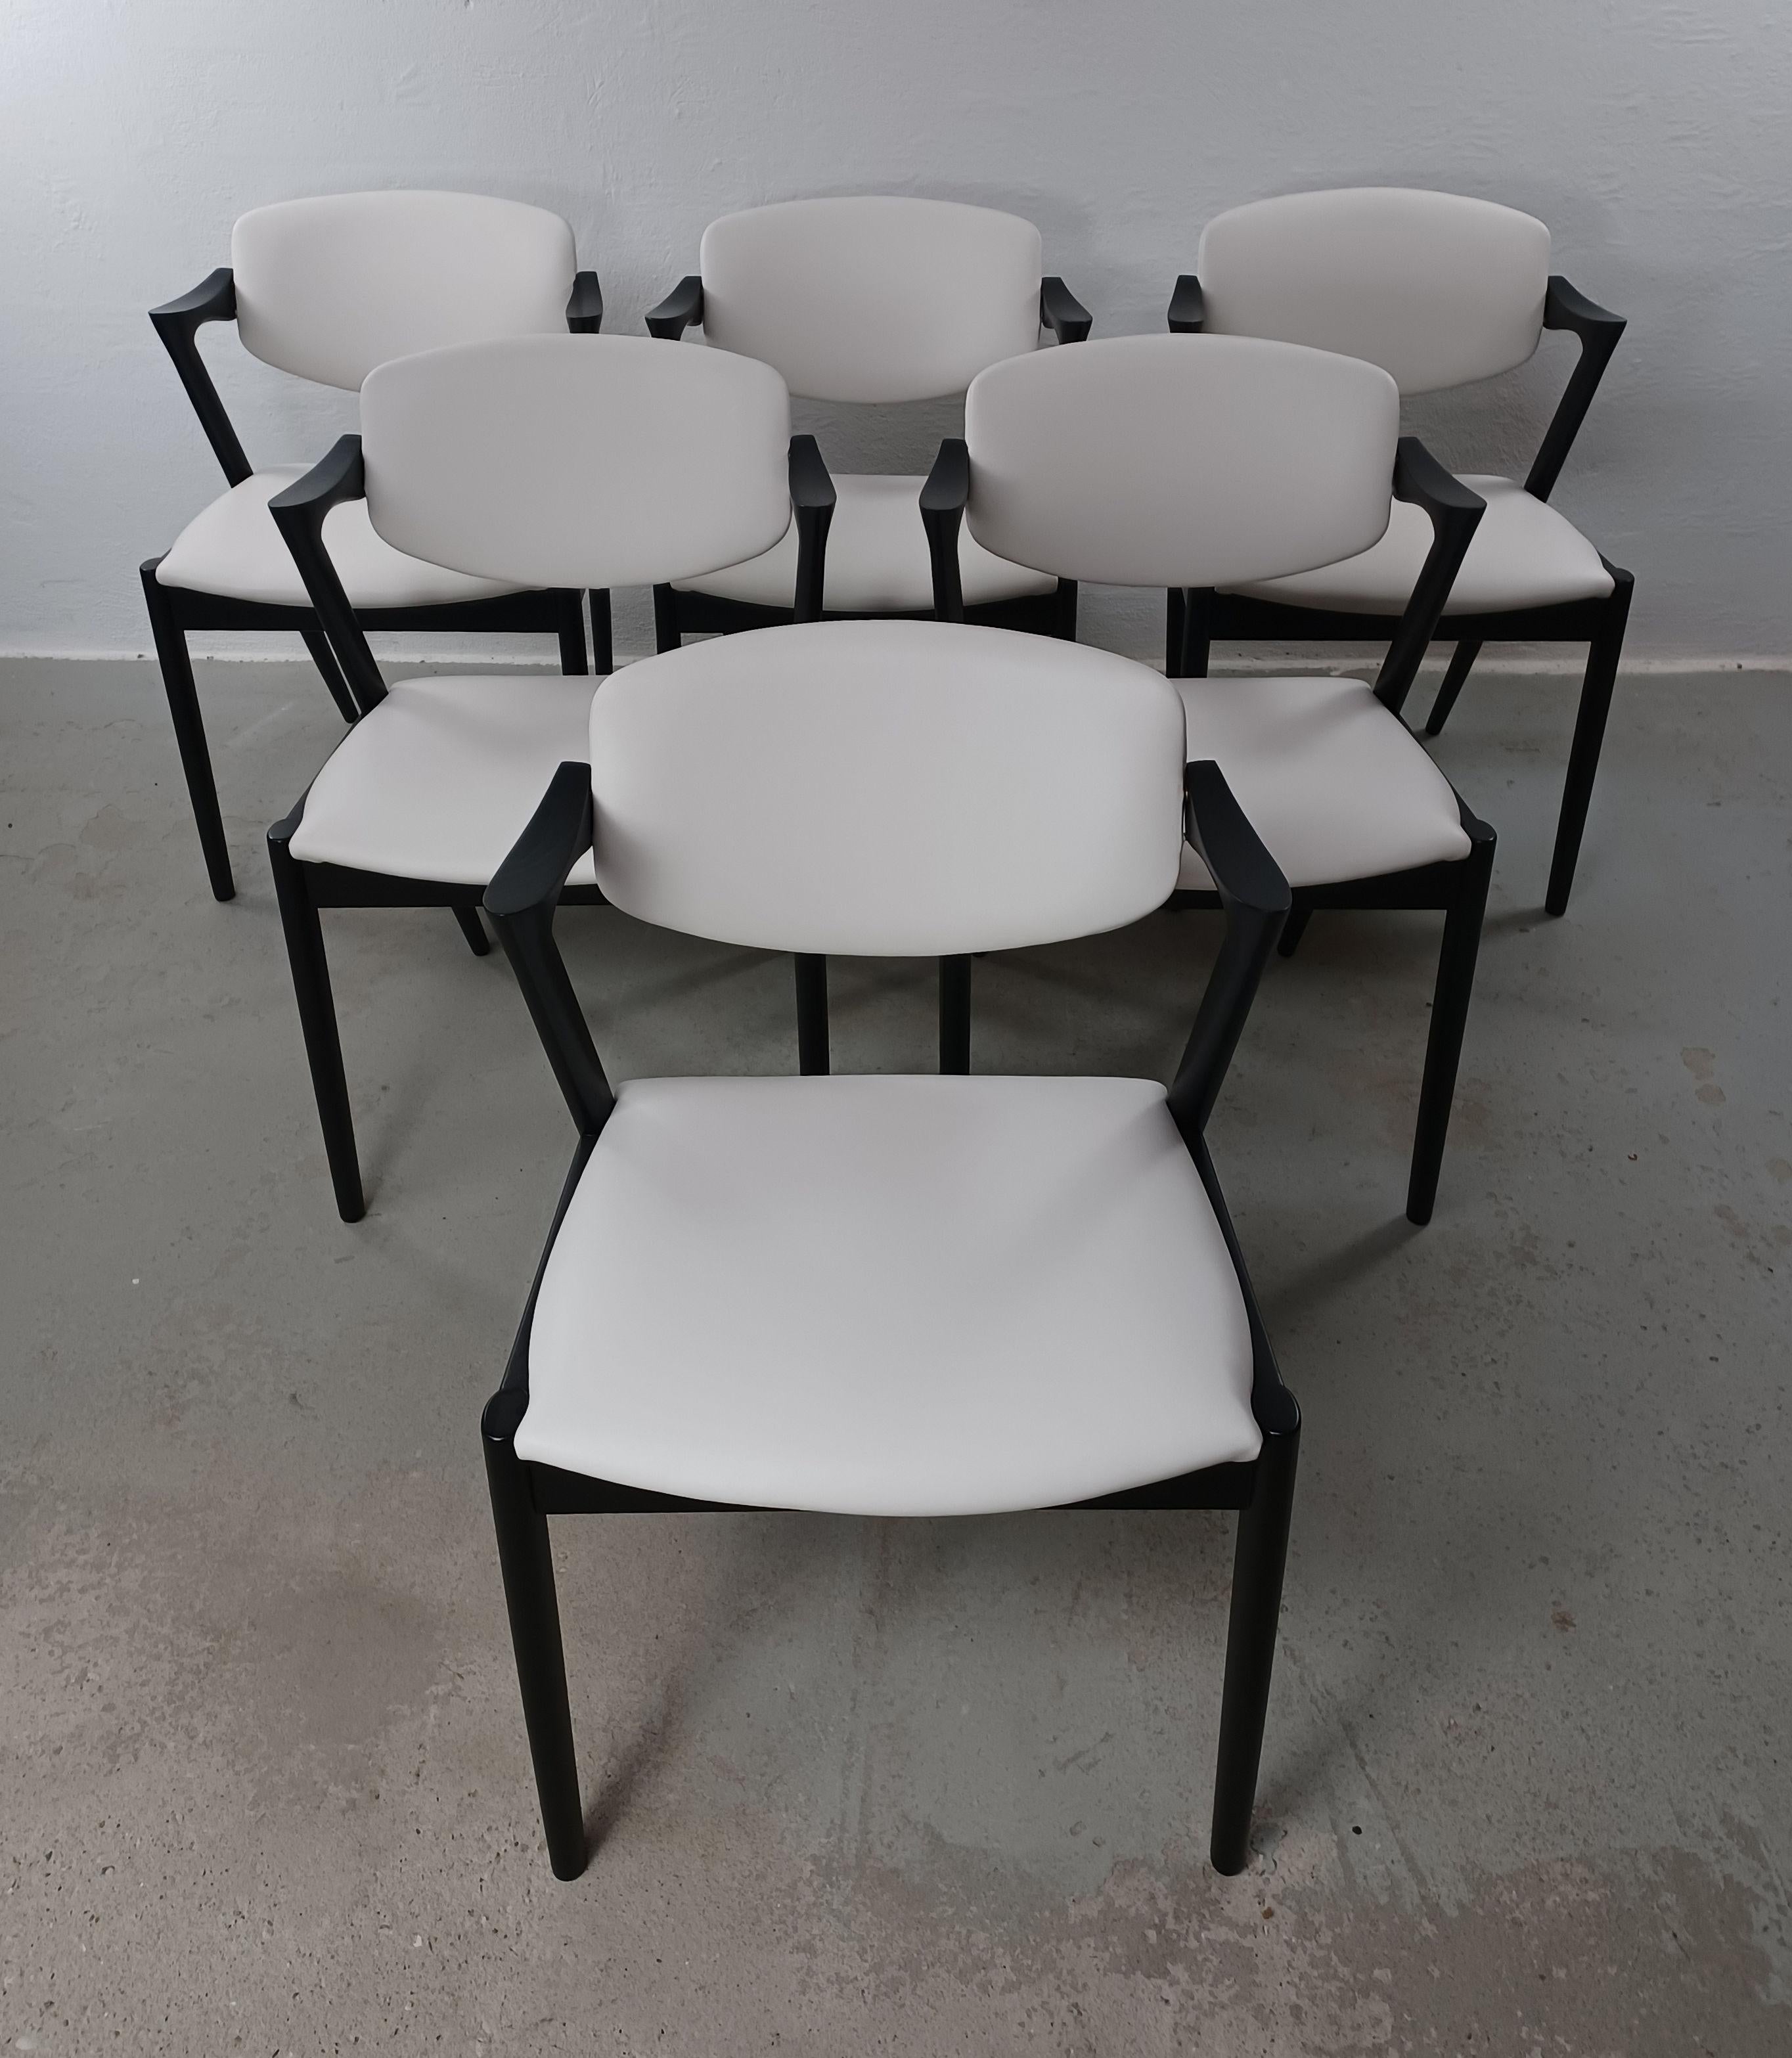 6 komplett restaurierte Eichenstühle Modell 42, schwarz lackiert, mit drehbaren Rückenlehnen von Kai Kristiansen für Schous Møbelfabrik, inkl. Polsterung nach Maß.

Die Stühle haben Kai Kristiansens typisches leichtes und elegantes Design, mit dem